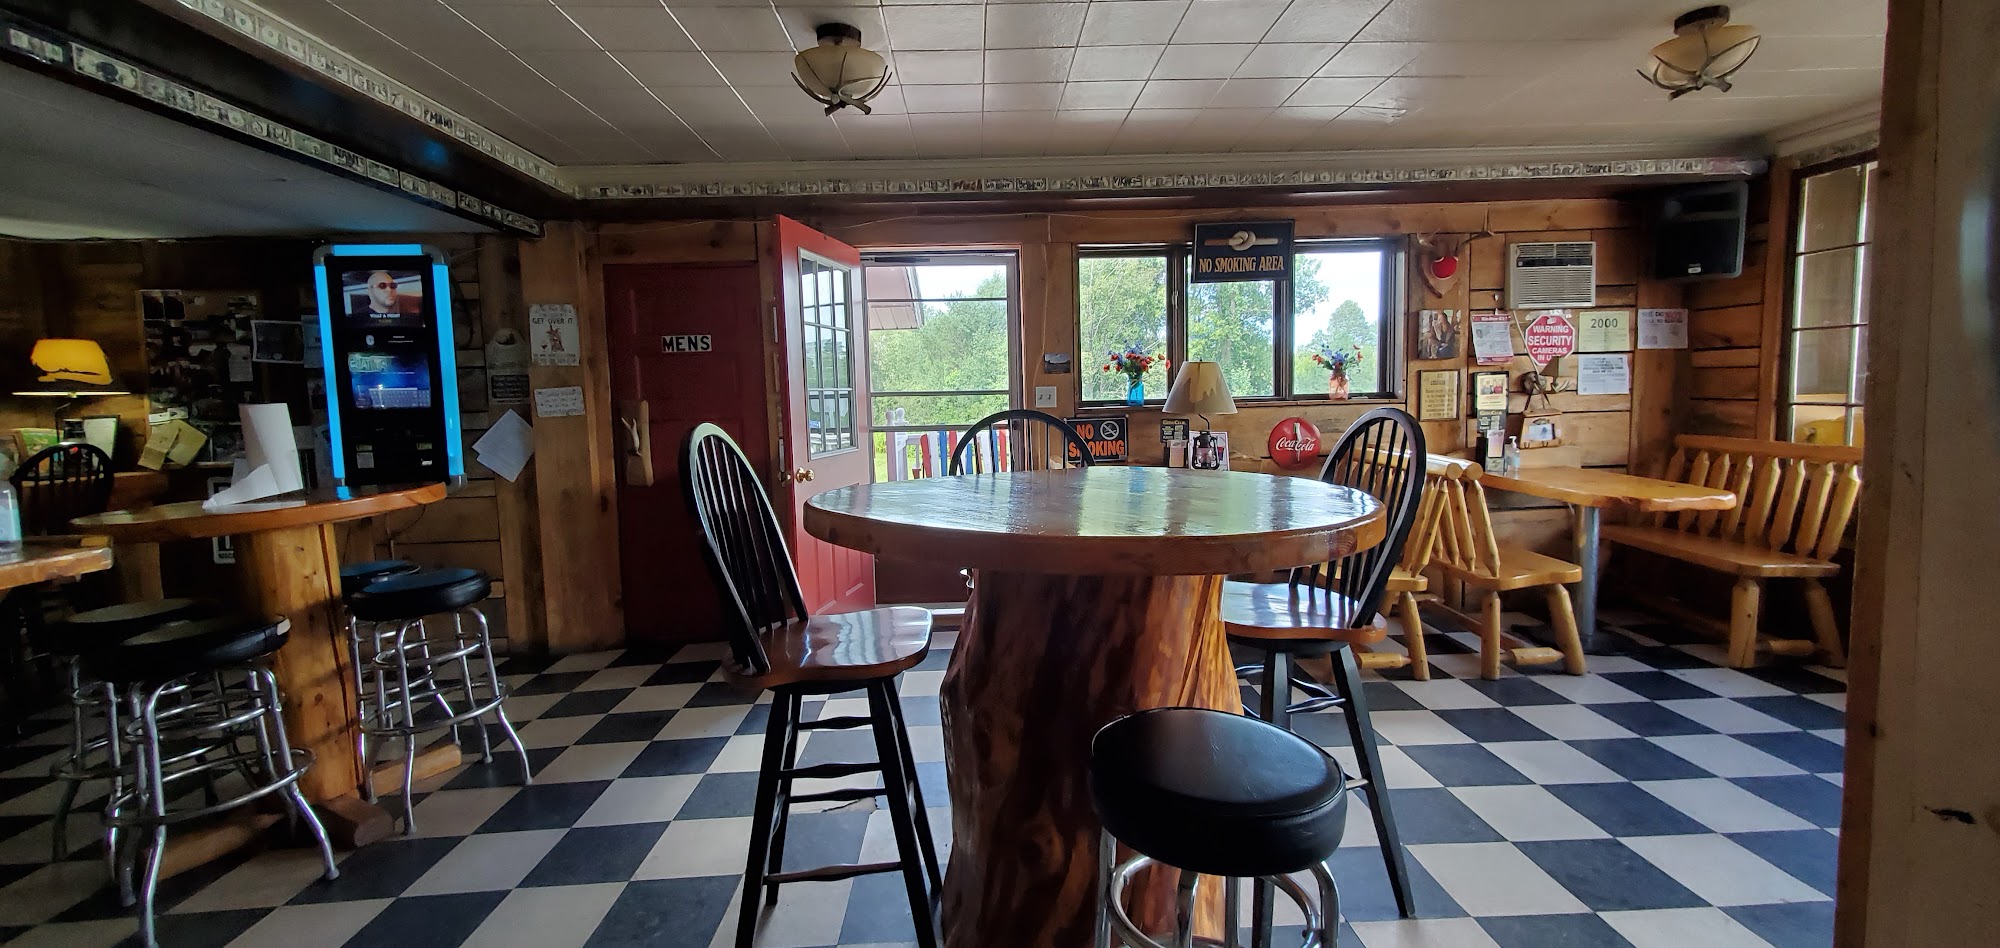 Historic Hautala's Tavern